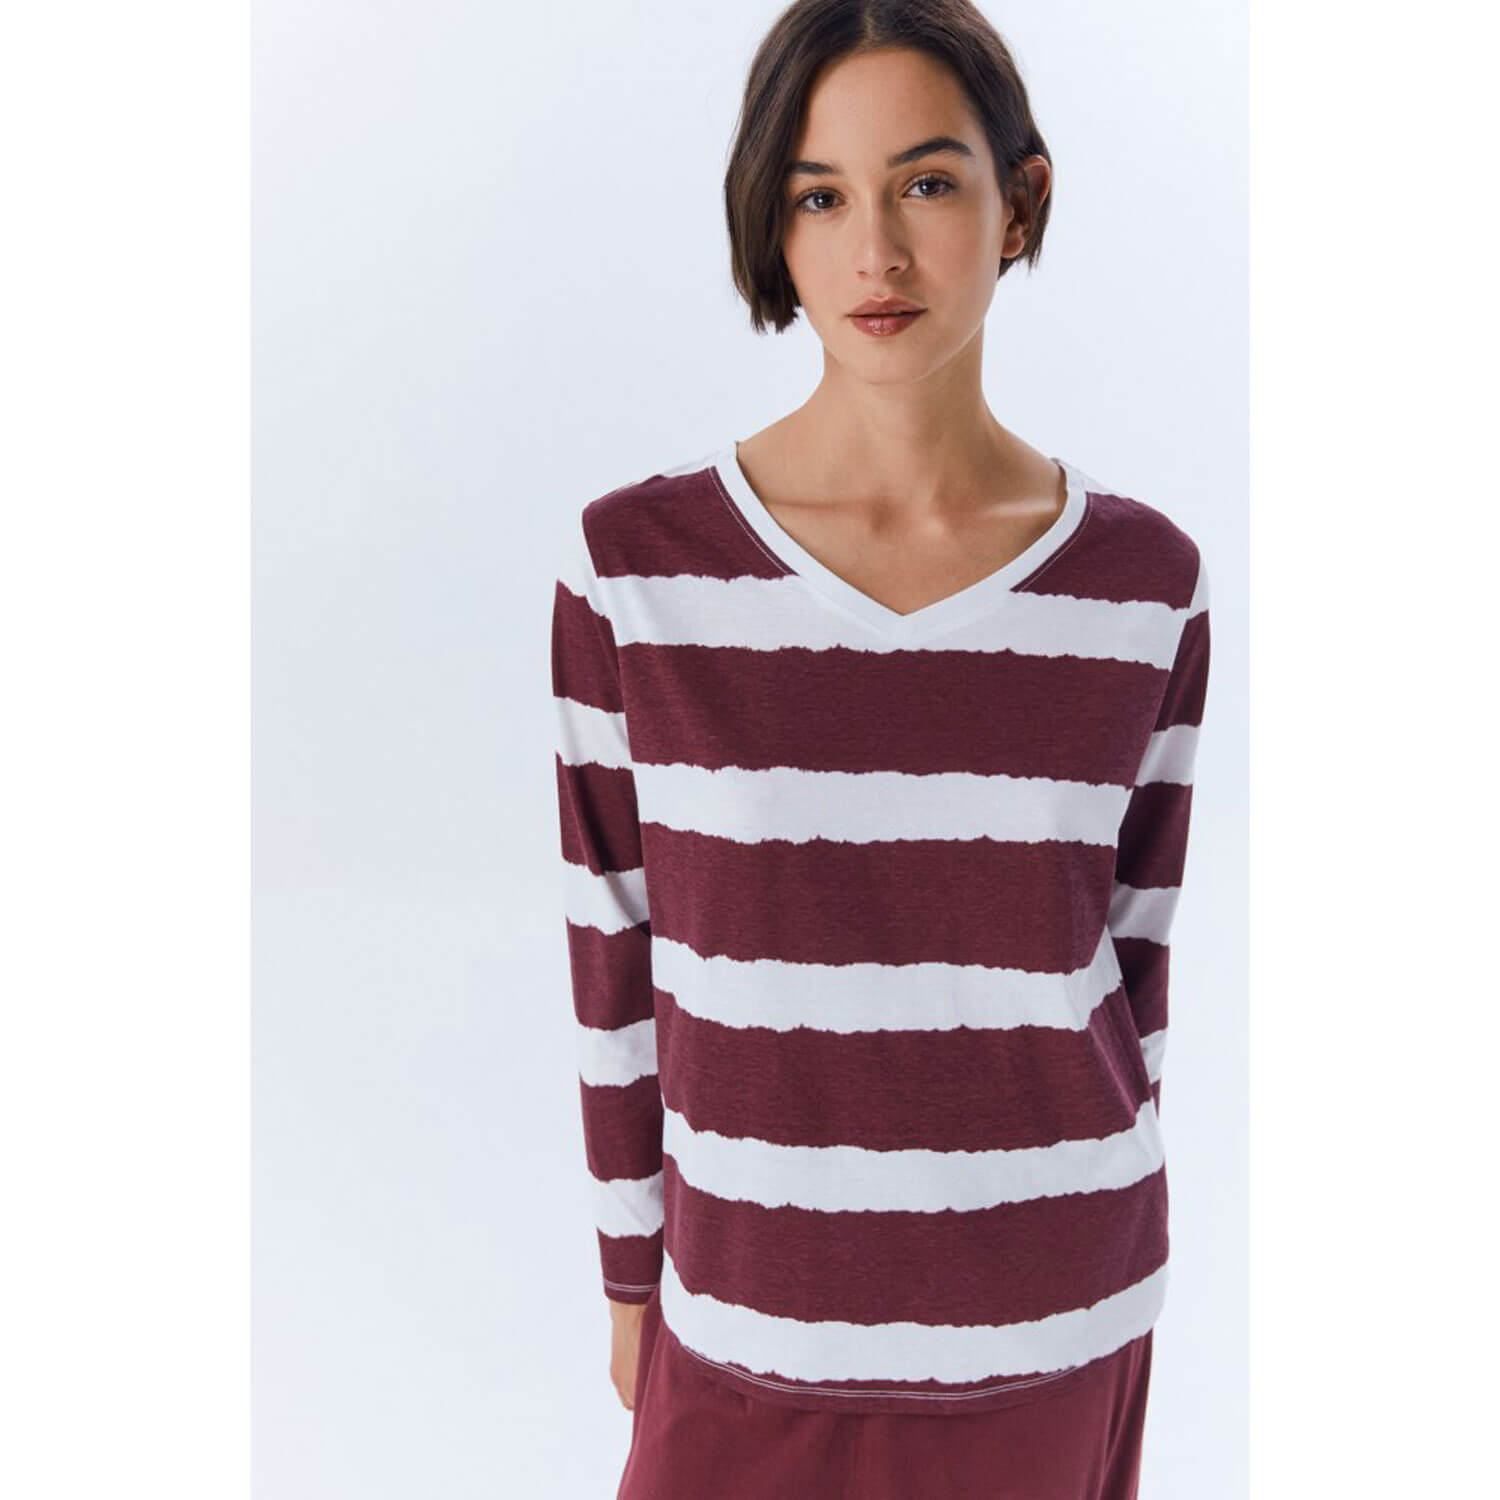 Sfera Striped Tye-Dye T-Shirt - Wine 4 Shaws Department Stores